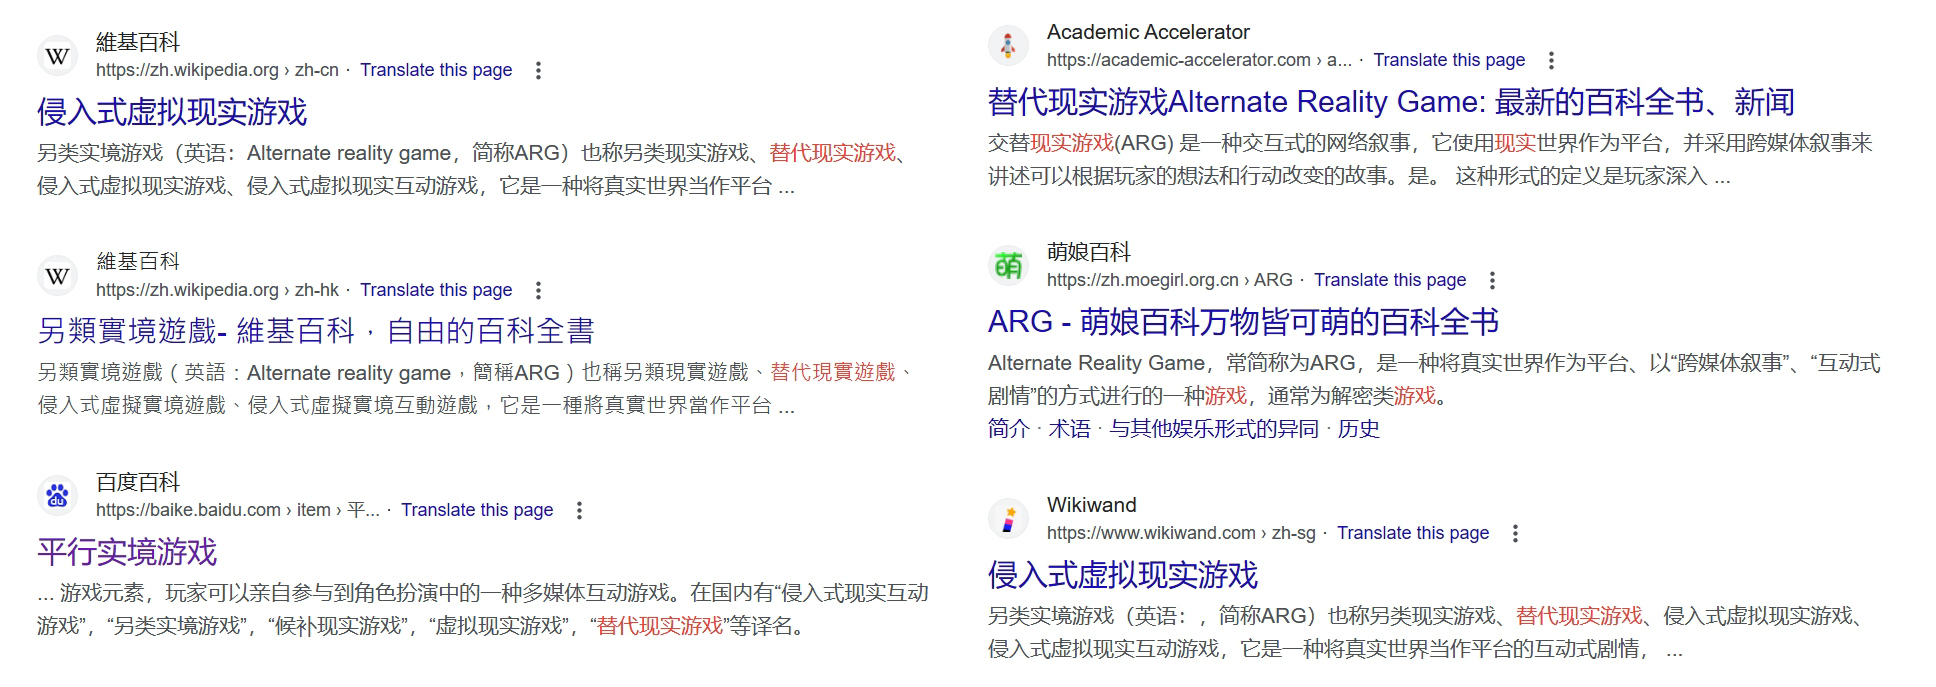 當你試圖用中文搜索ARG